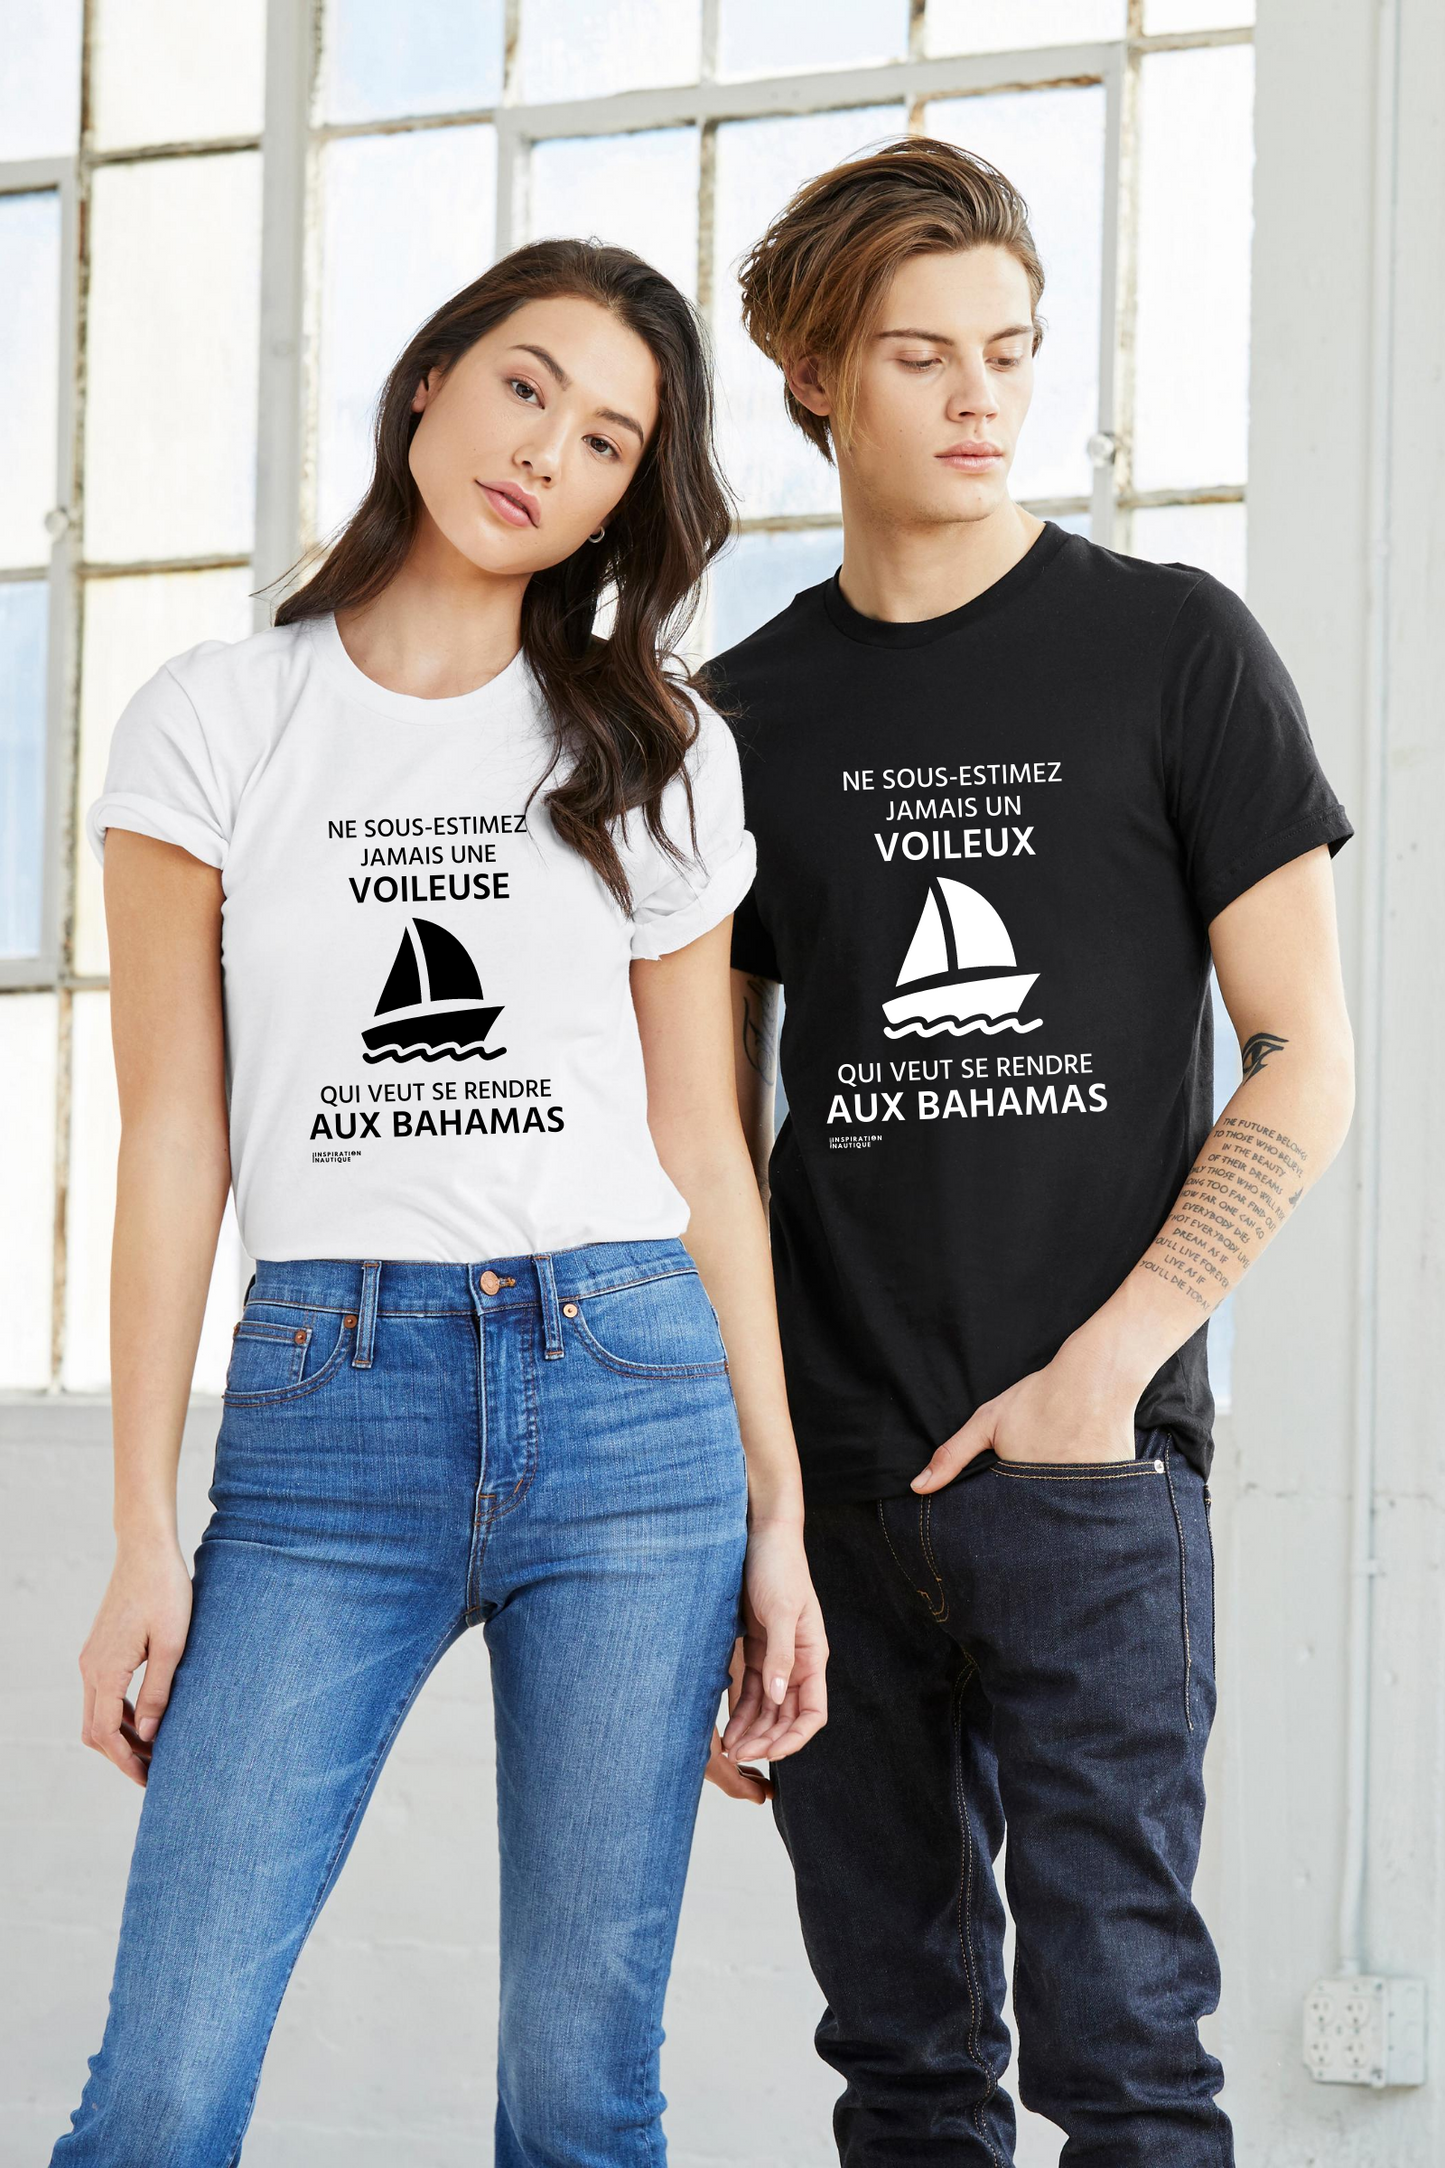 T-shirt unisexe : Ne sous-estimez jamais une voileuse qui veut se rendre aux Bahamas - Visuel noir